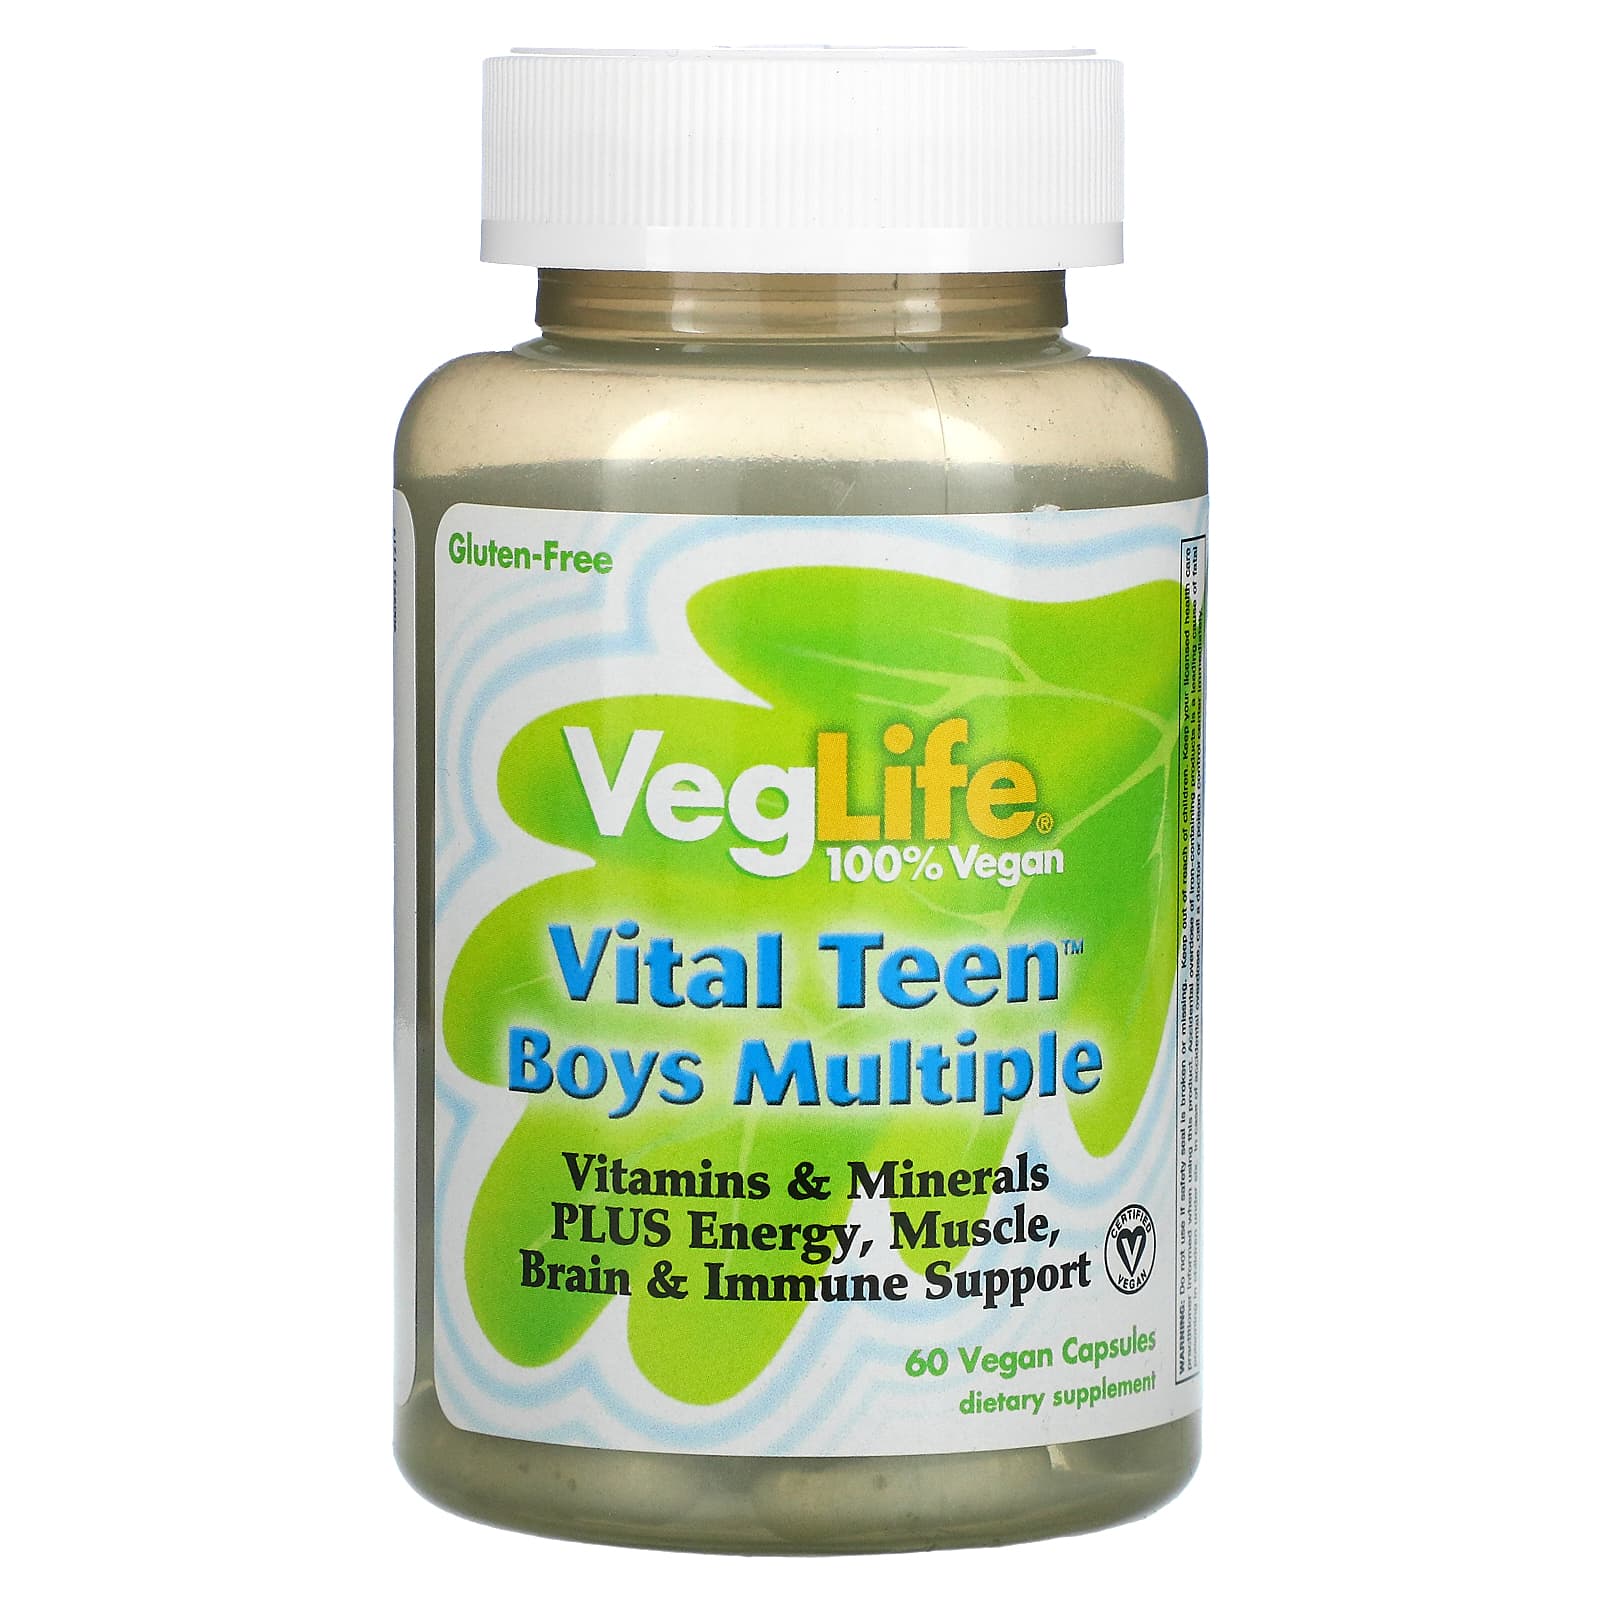 VegLife Vital Teen витаминный комплекс для мальчиков 60 вегетарианских капсул